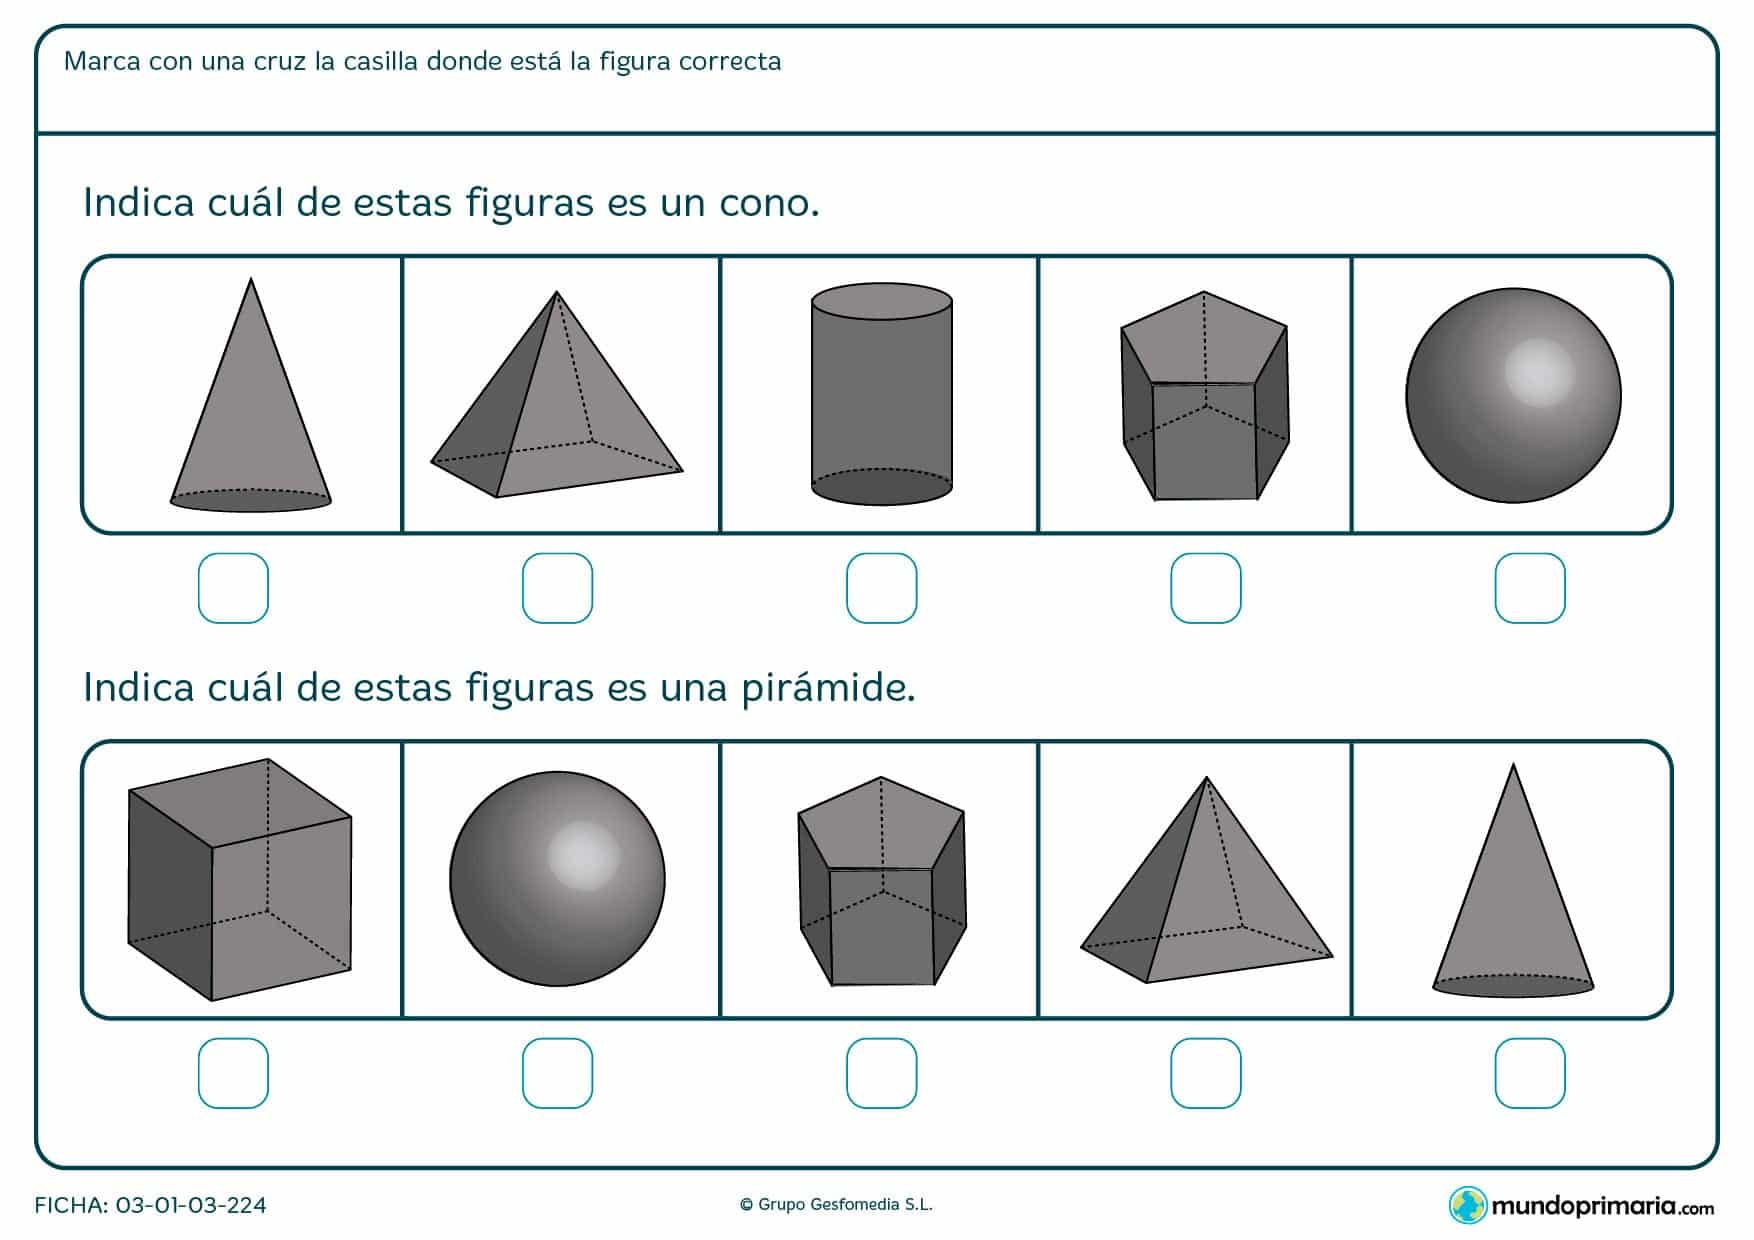 Ficha de planos piramidales en la que hay que indicar la figura que te pide en el enunciado.